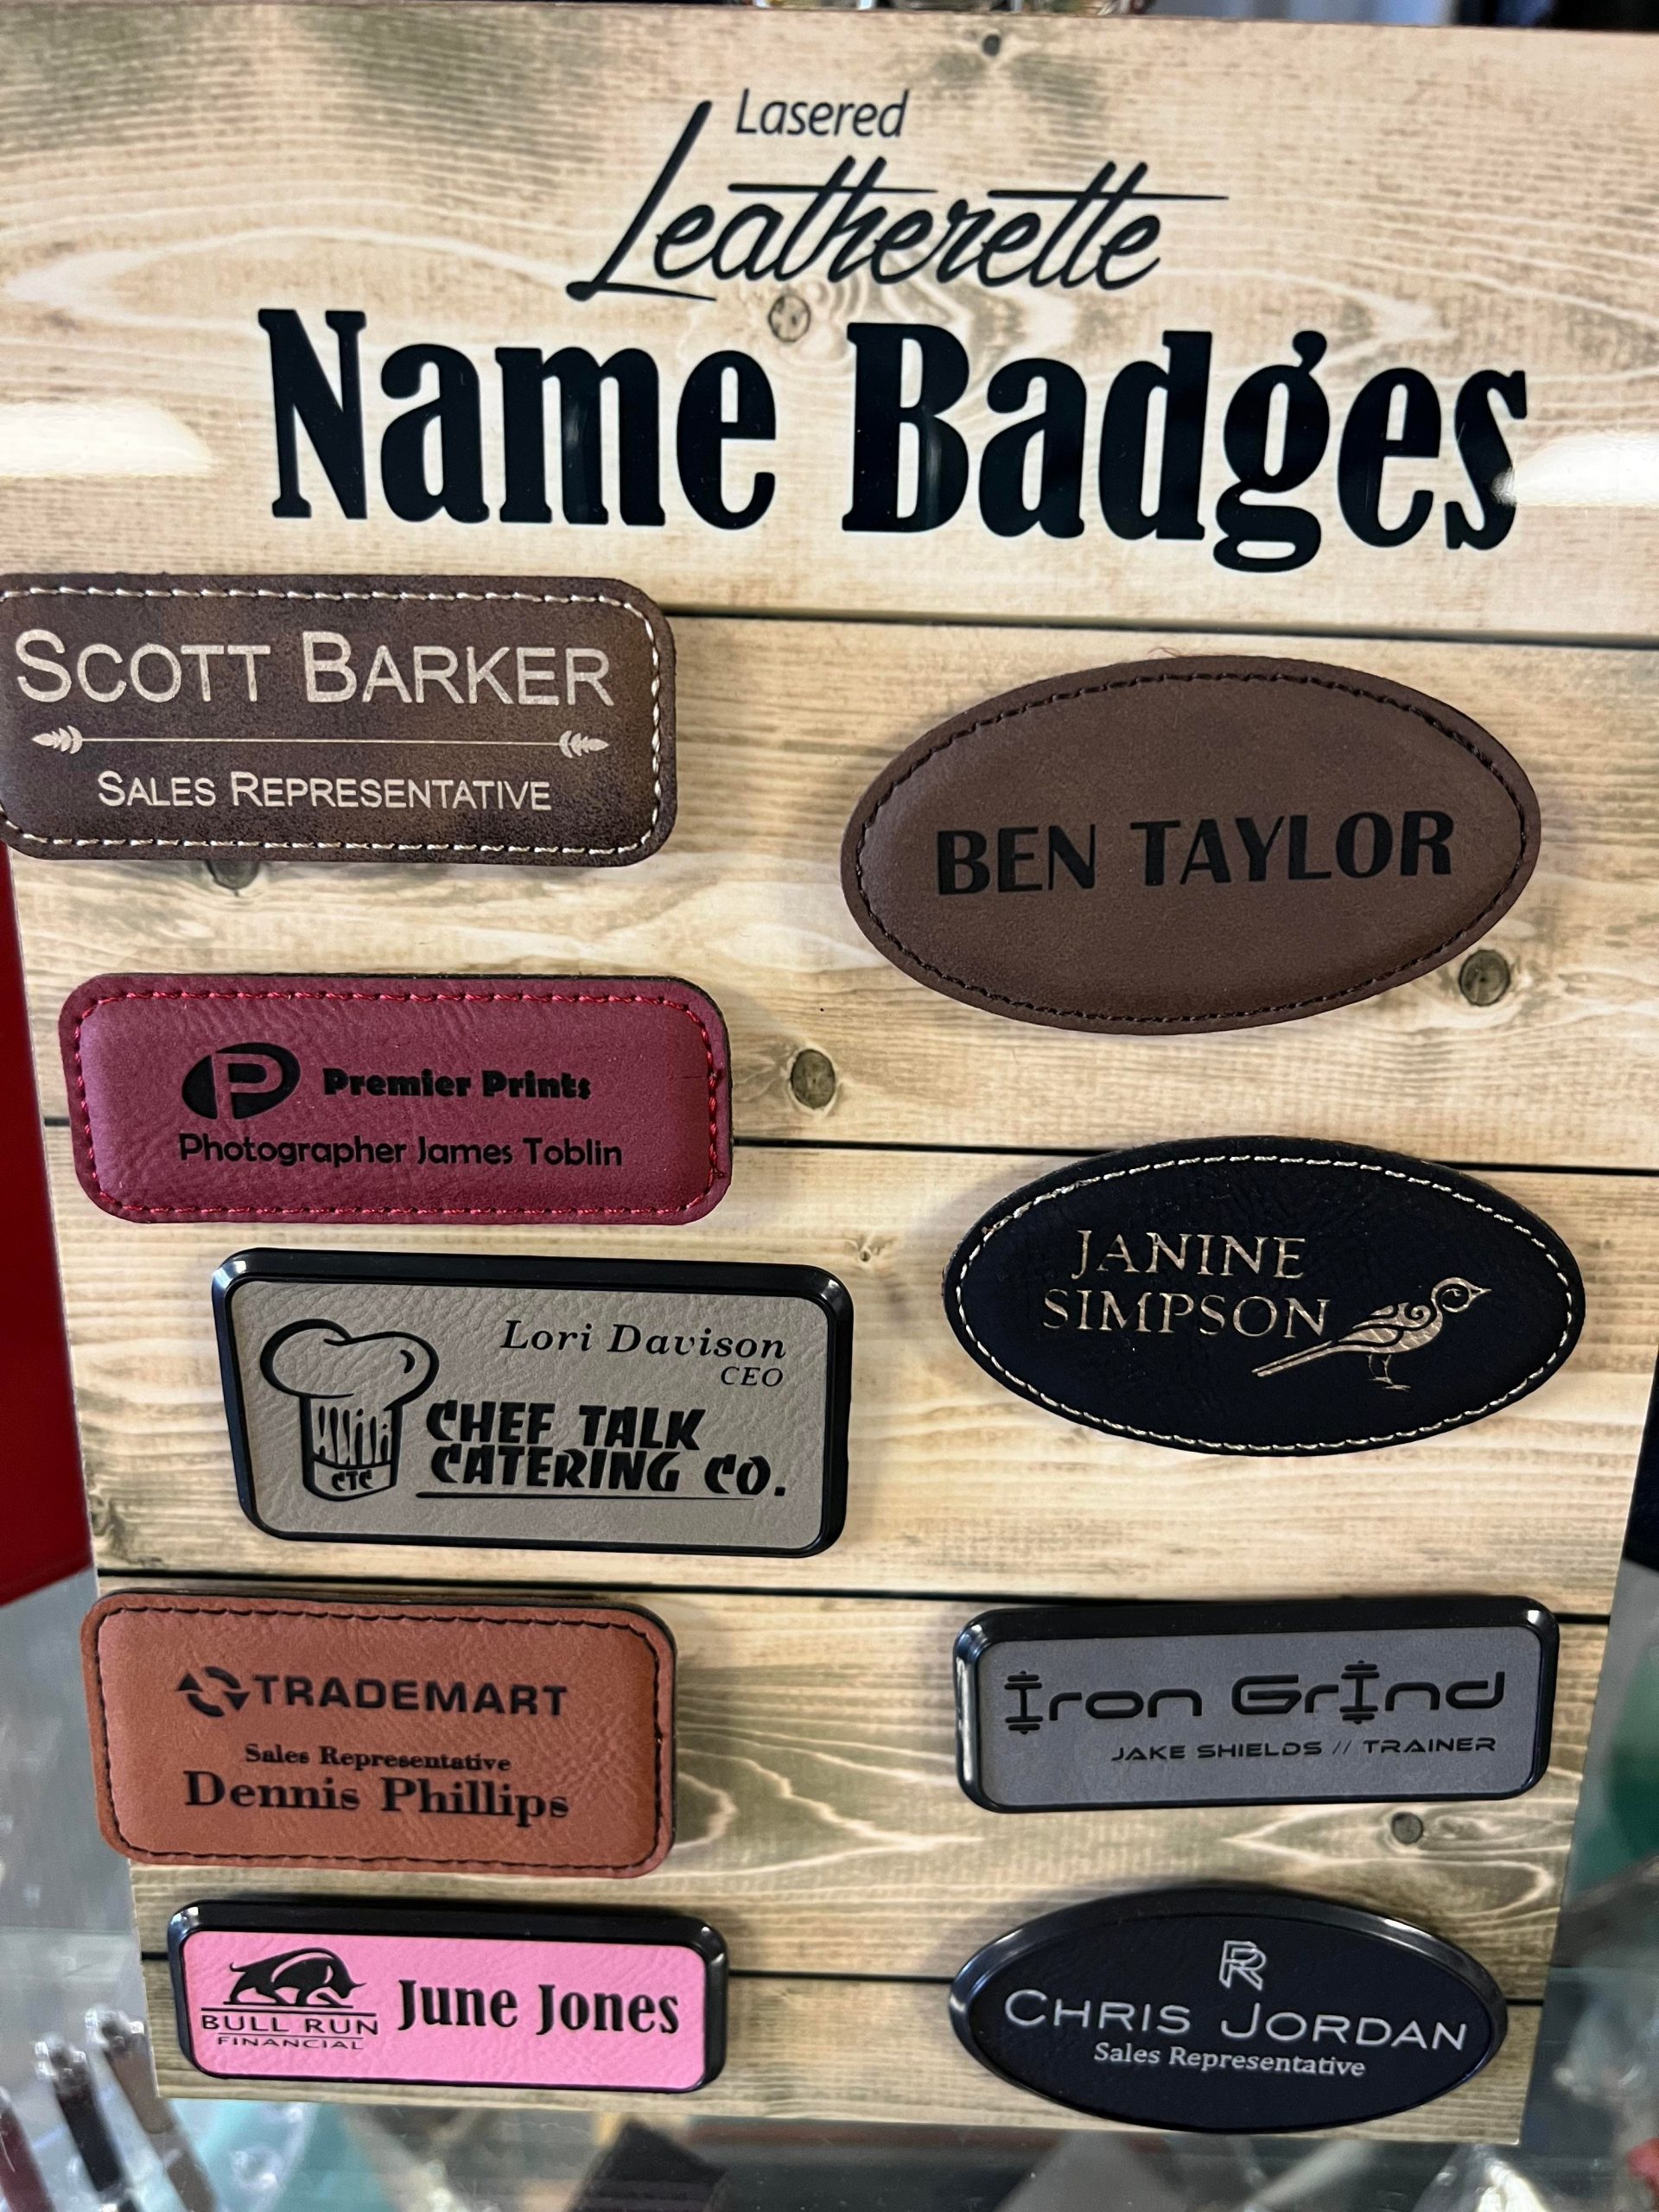 Laser engraved name badges